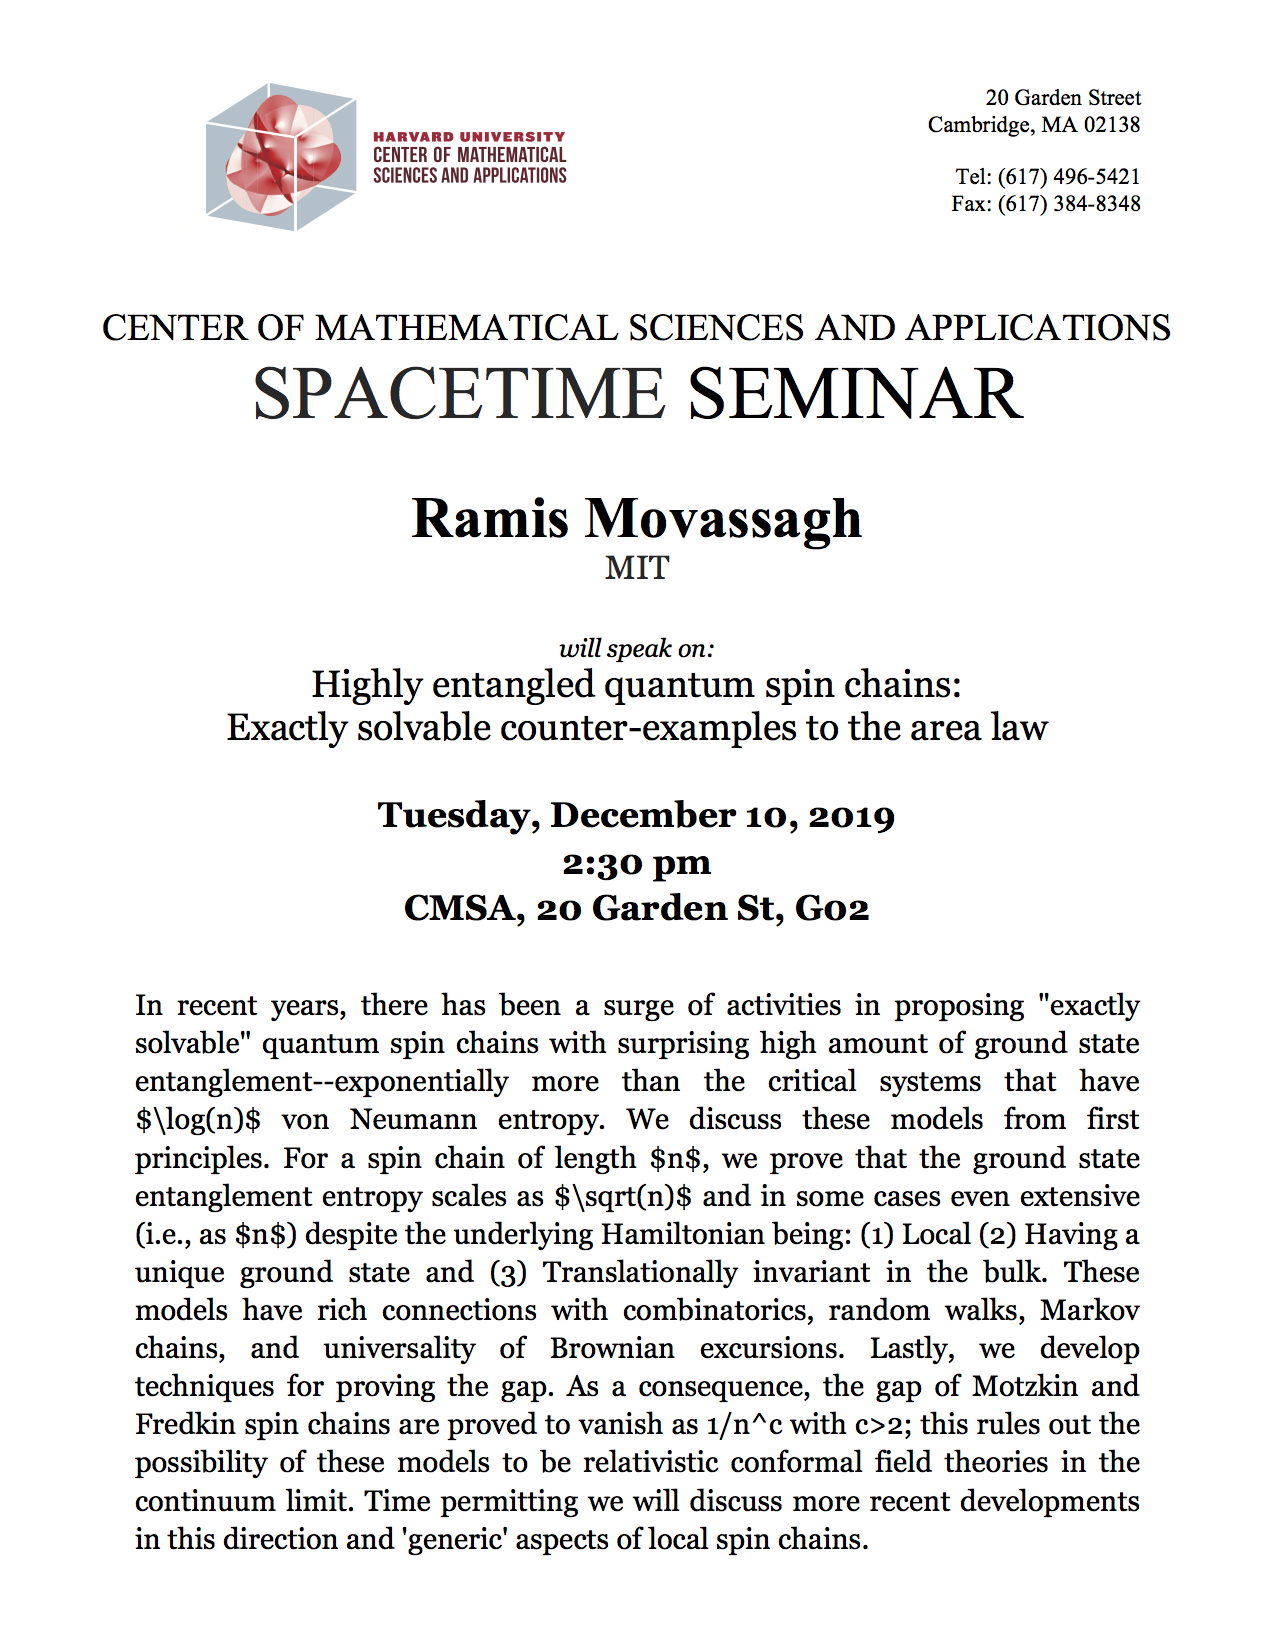 12/10/2019 Spacetime Seminar